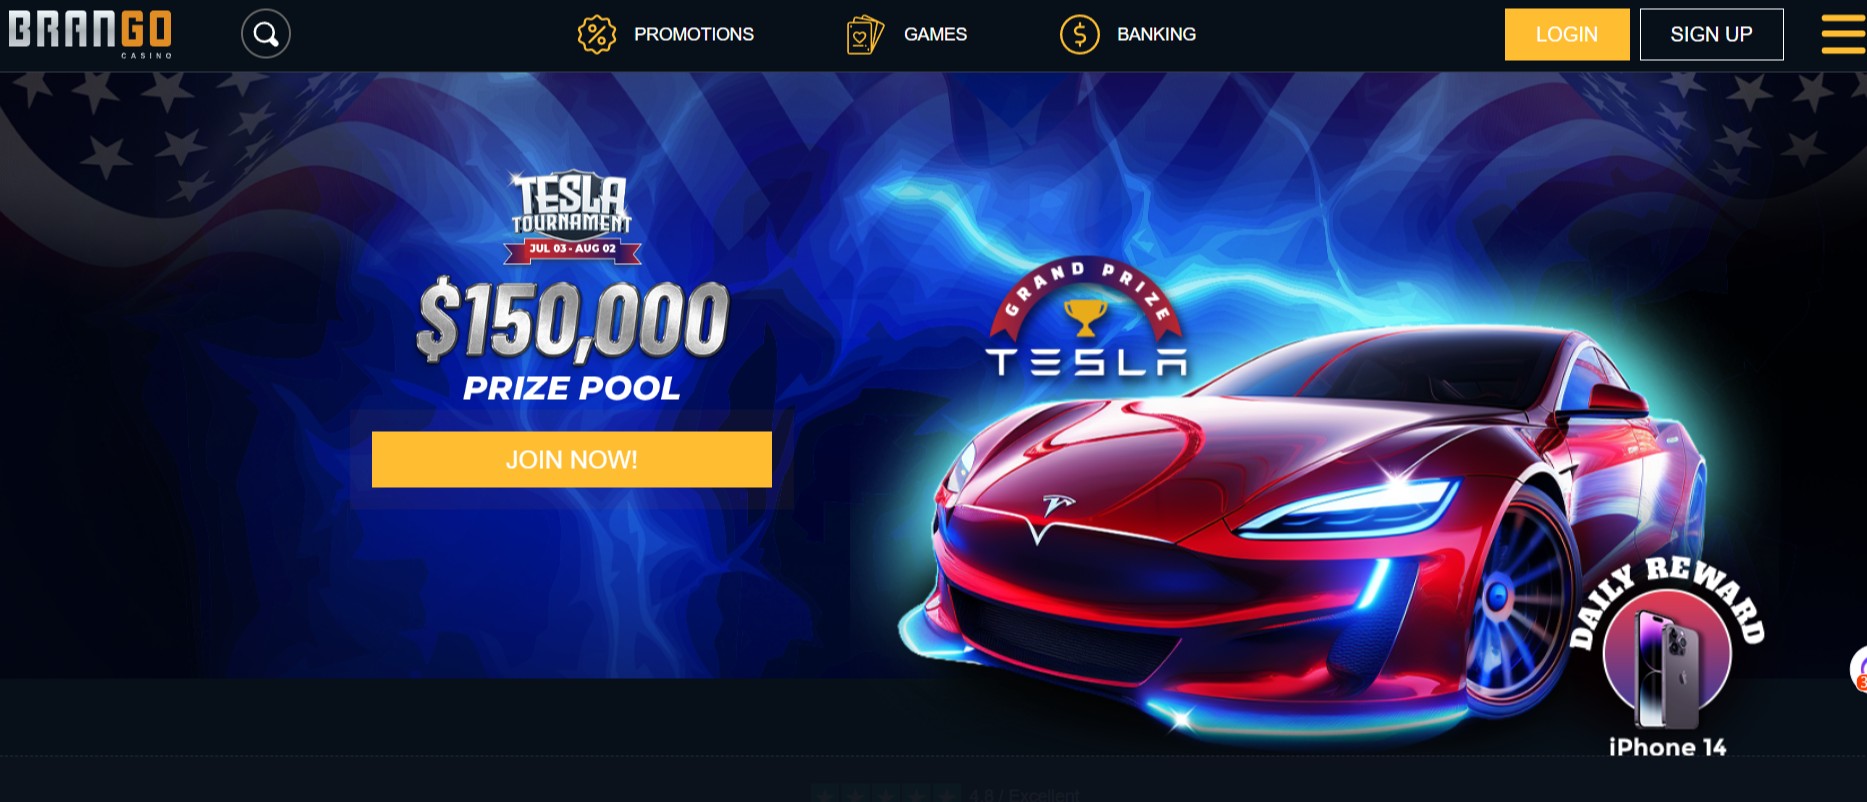 brango casino website homepage screenshot